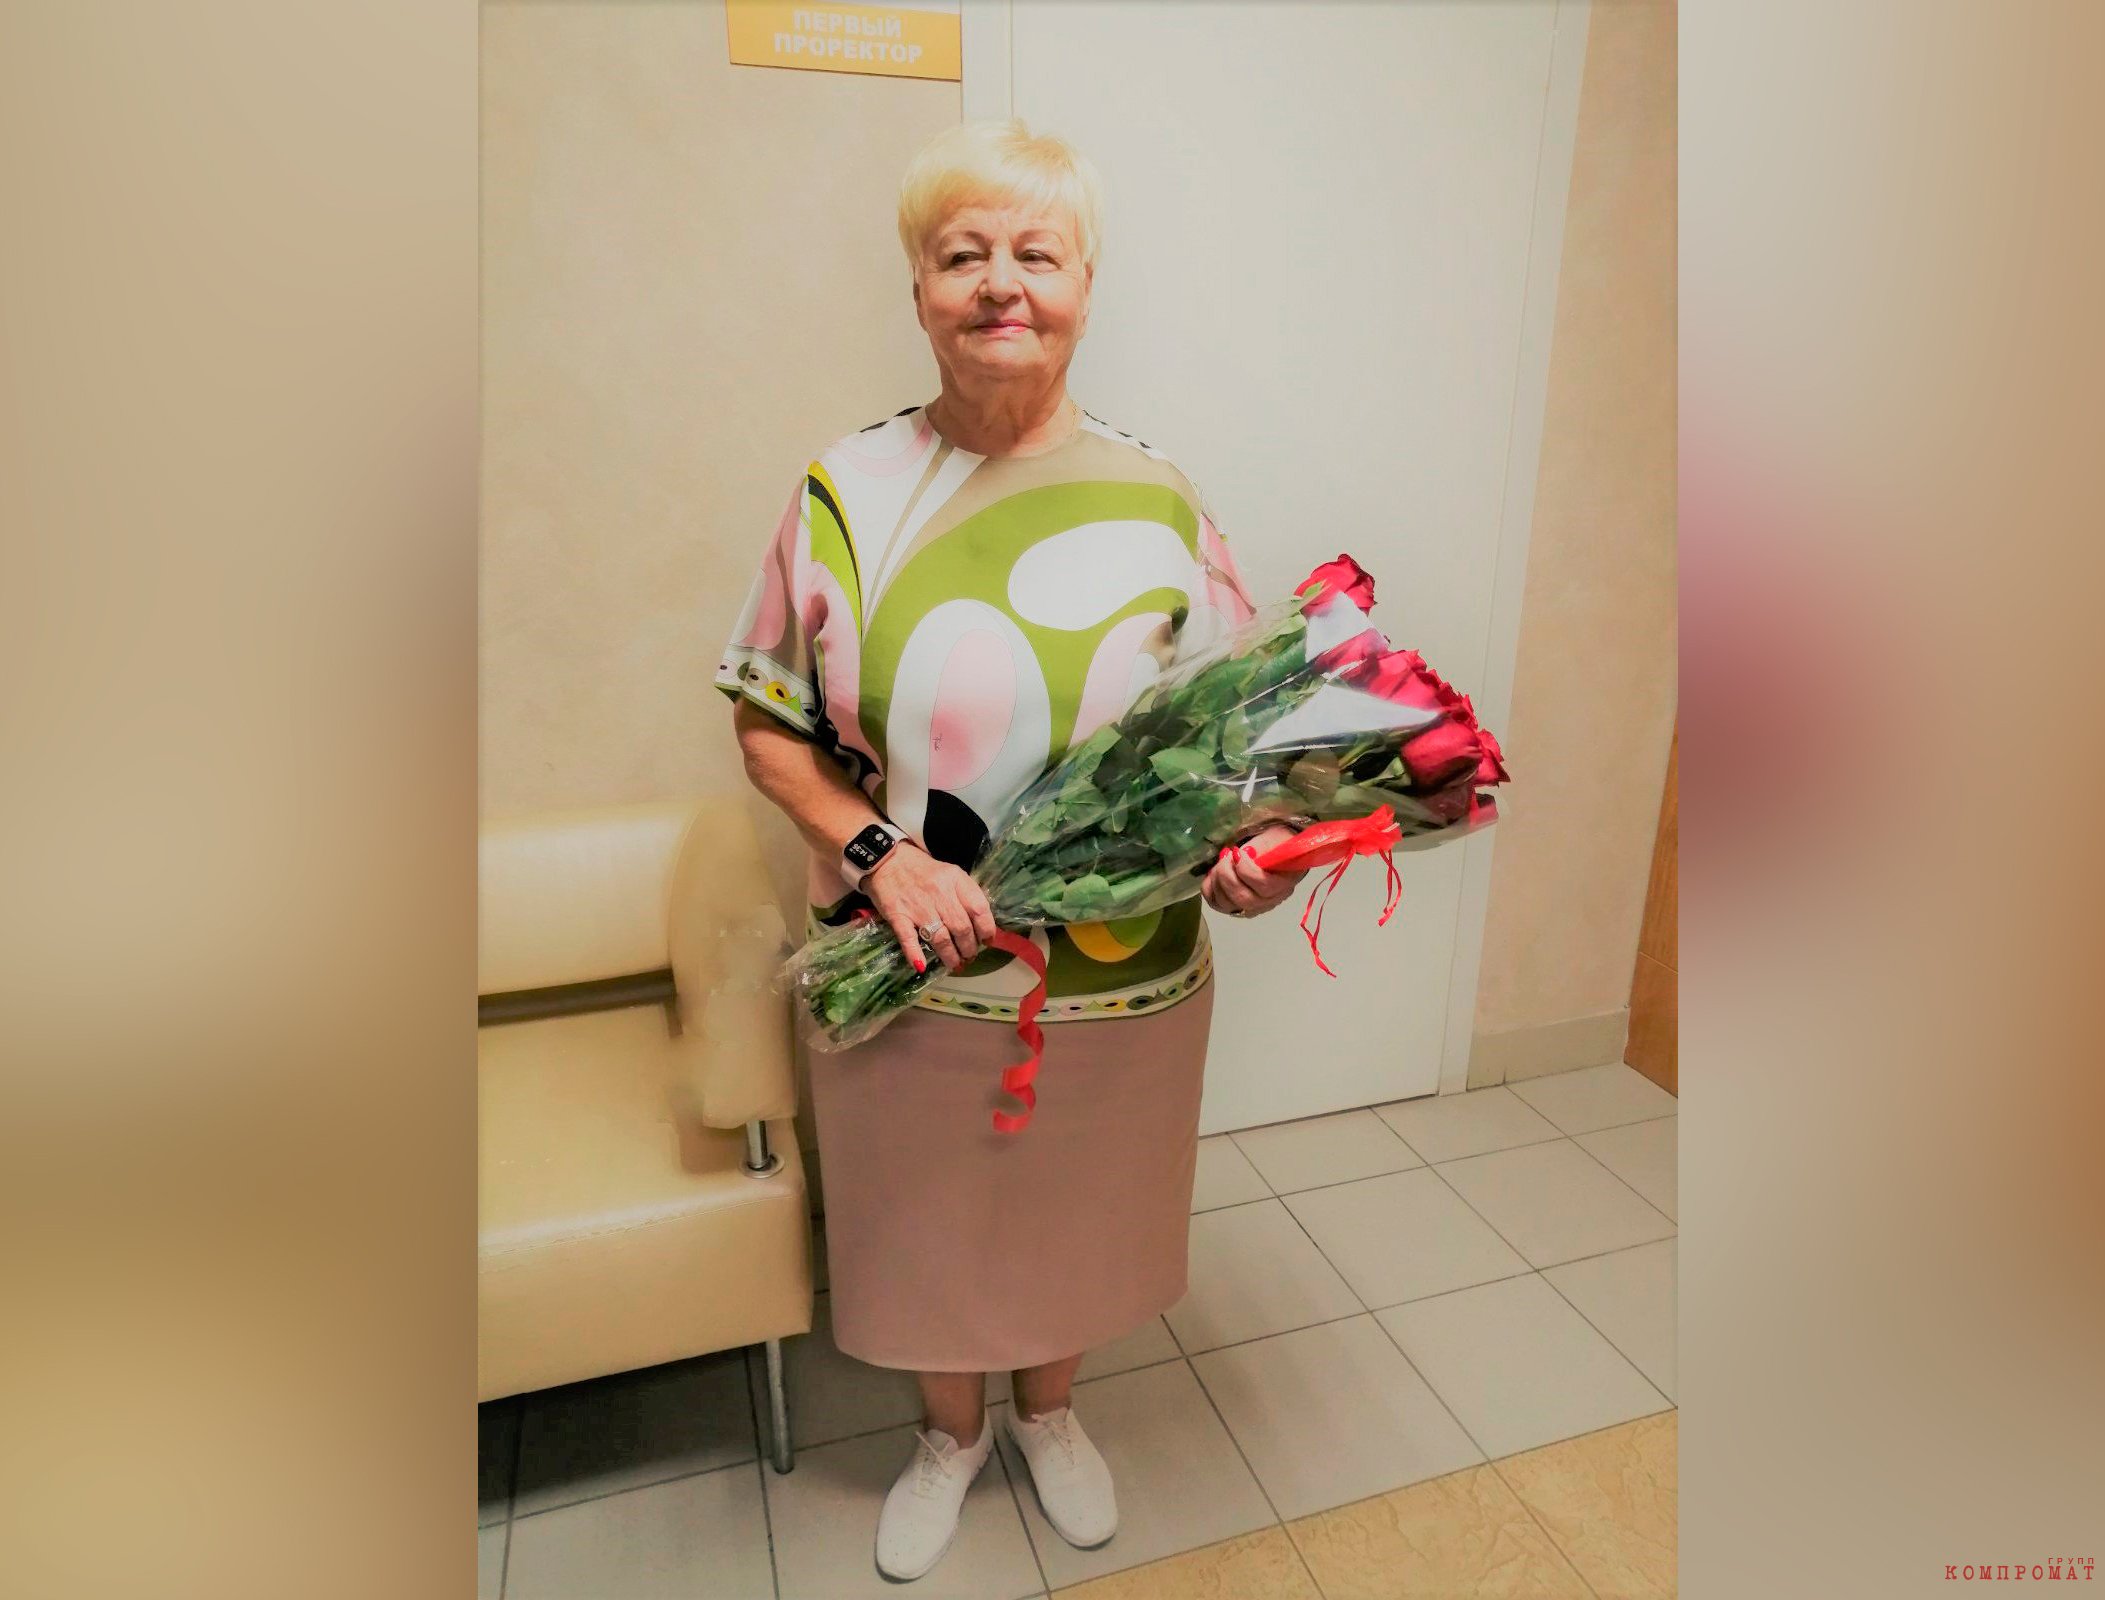 Совладелец "Эры" 75-летняя самарская предпринимательница Вера Казачева